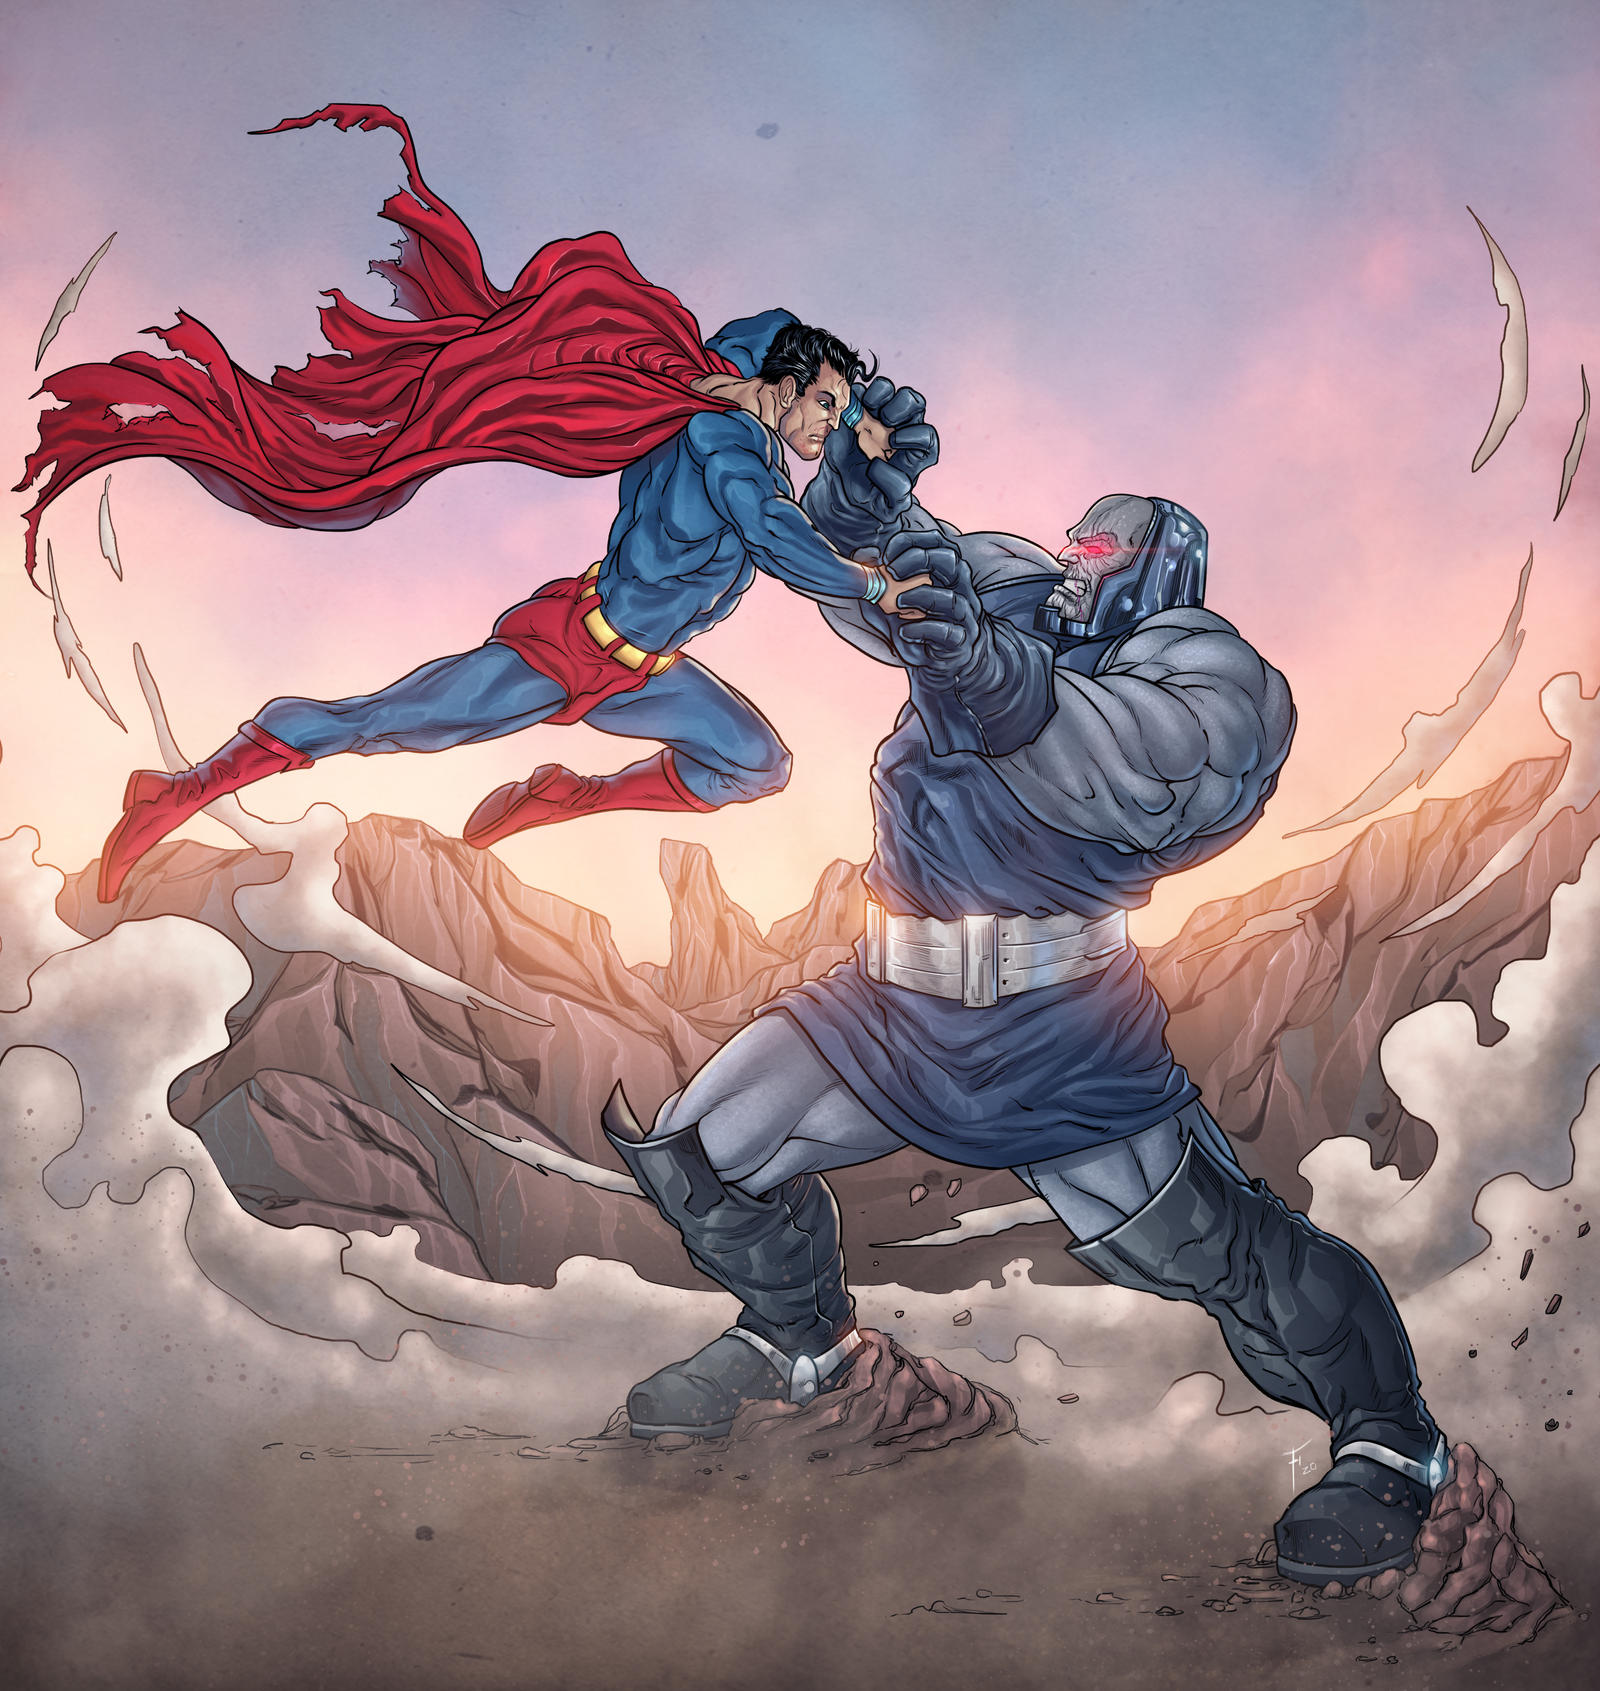 Superman VS Darkseid by Mariano1990 on DeviantArt